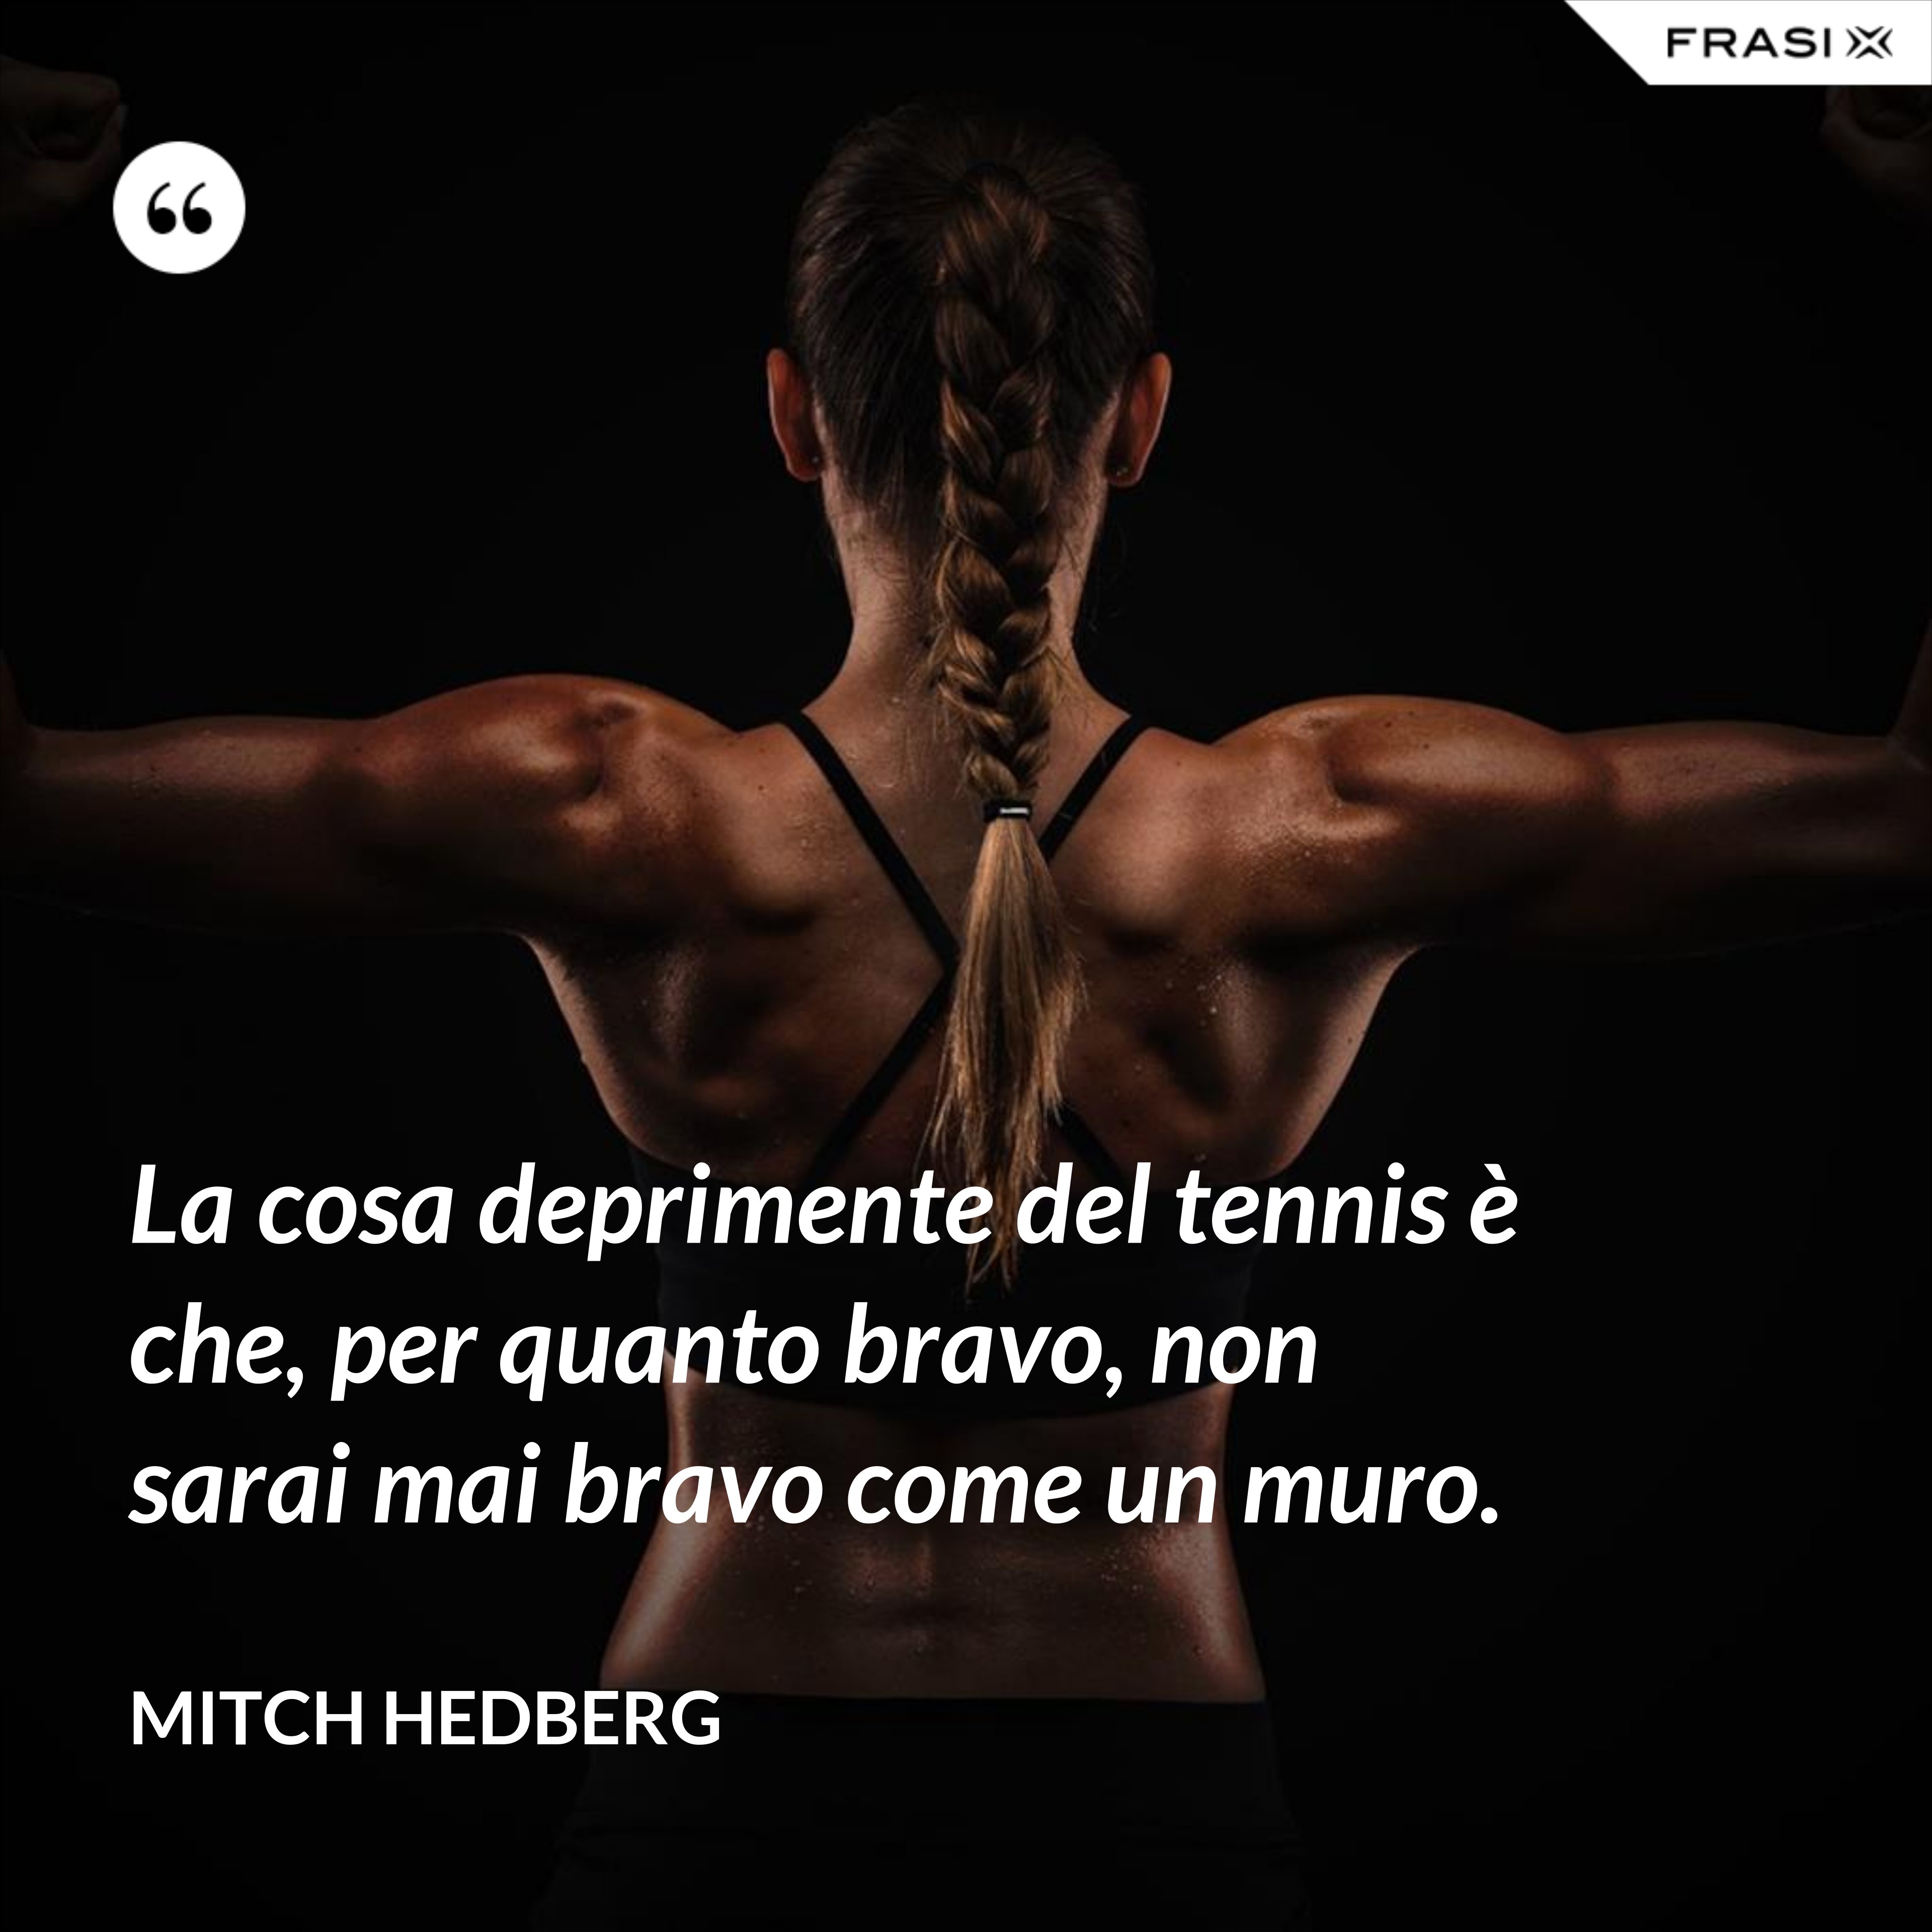 La cosa deprimente del tennis è che, per quanto bravo, non sarai mai bravo come un muro. - Mitch Hedberg